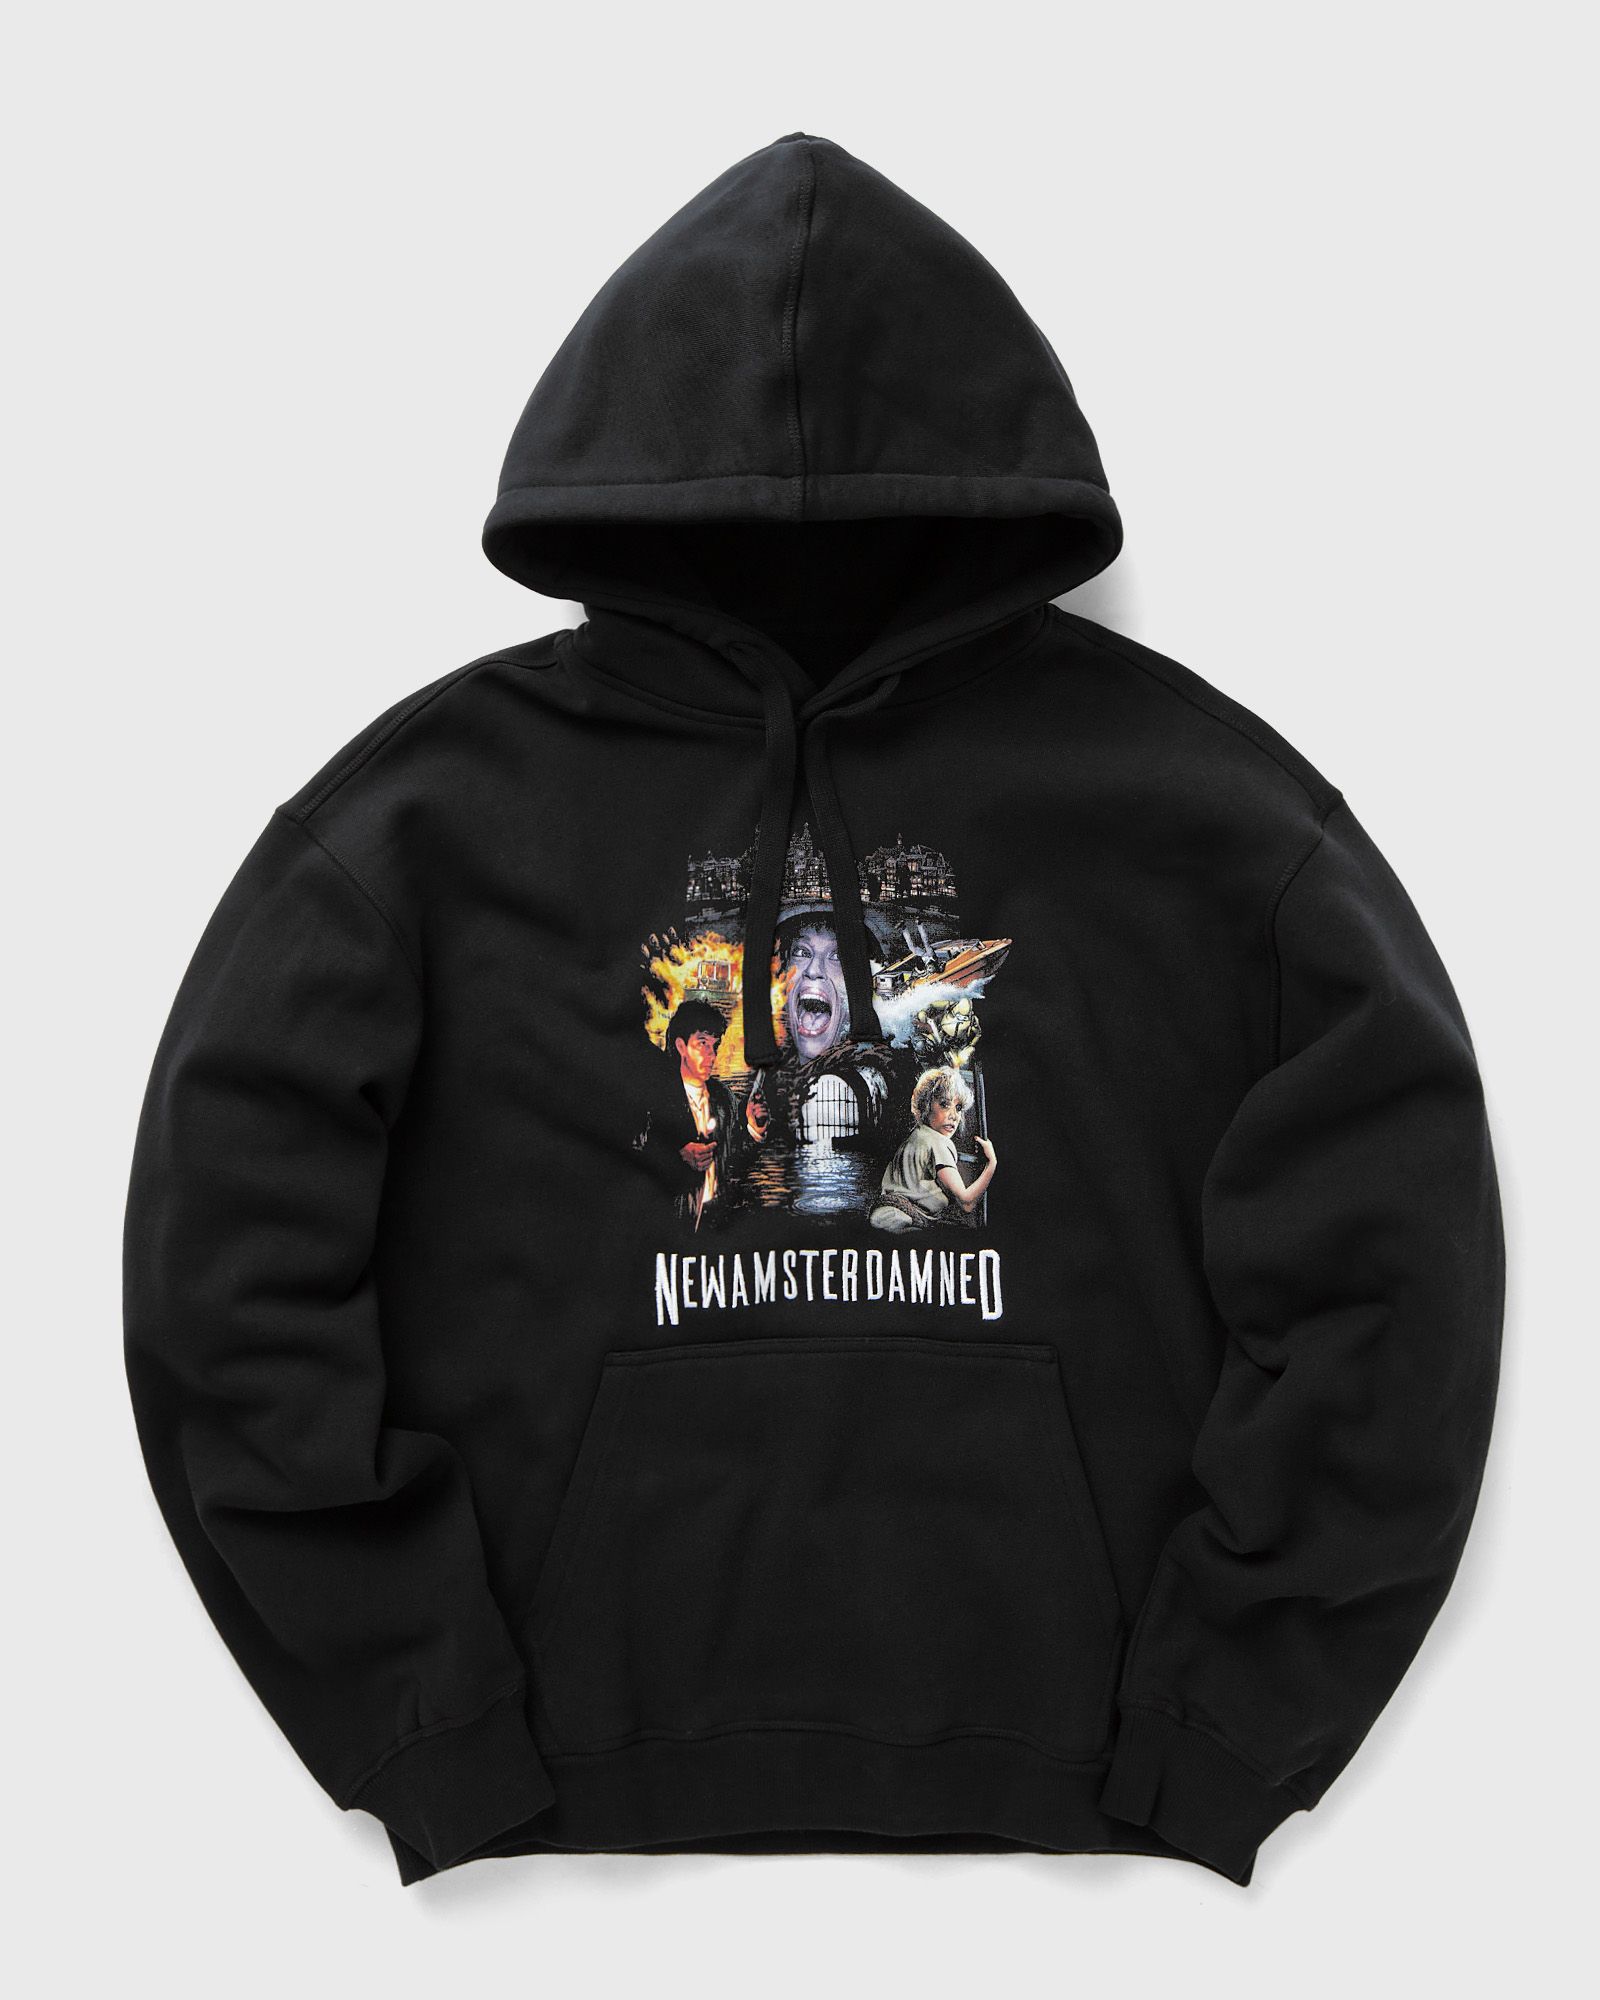 New Amsterdam - ned hoodie men hoodies black in größe:xl